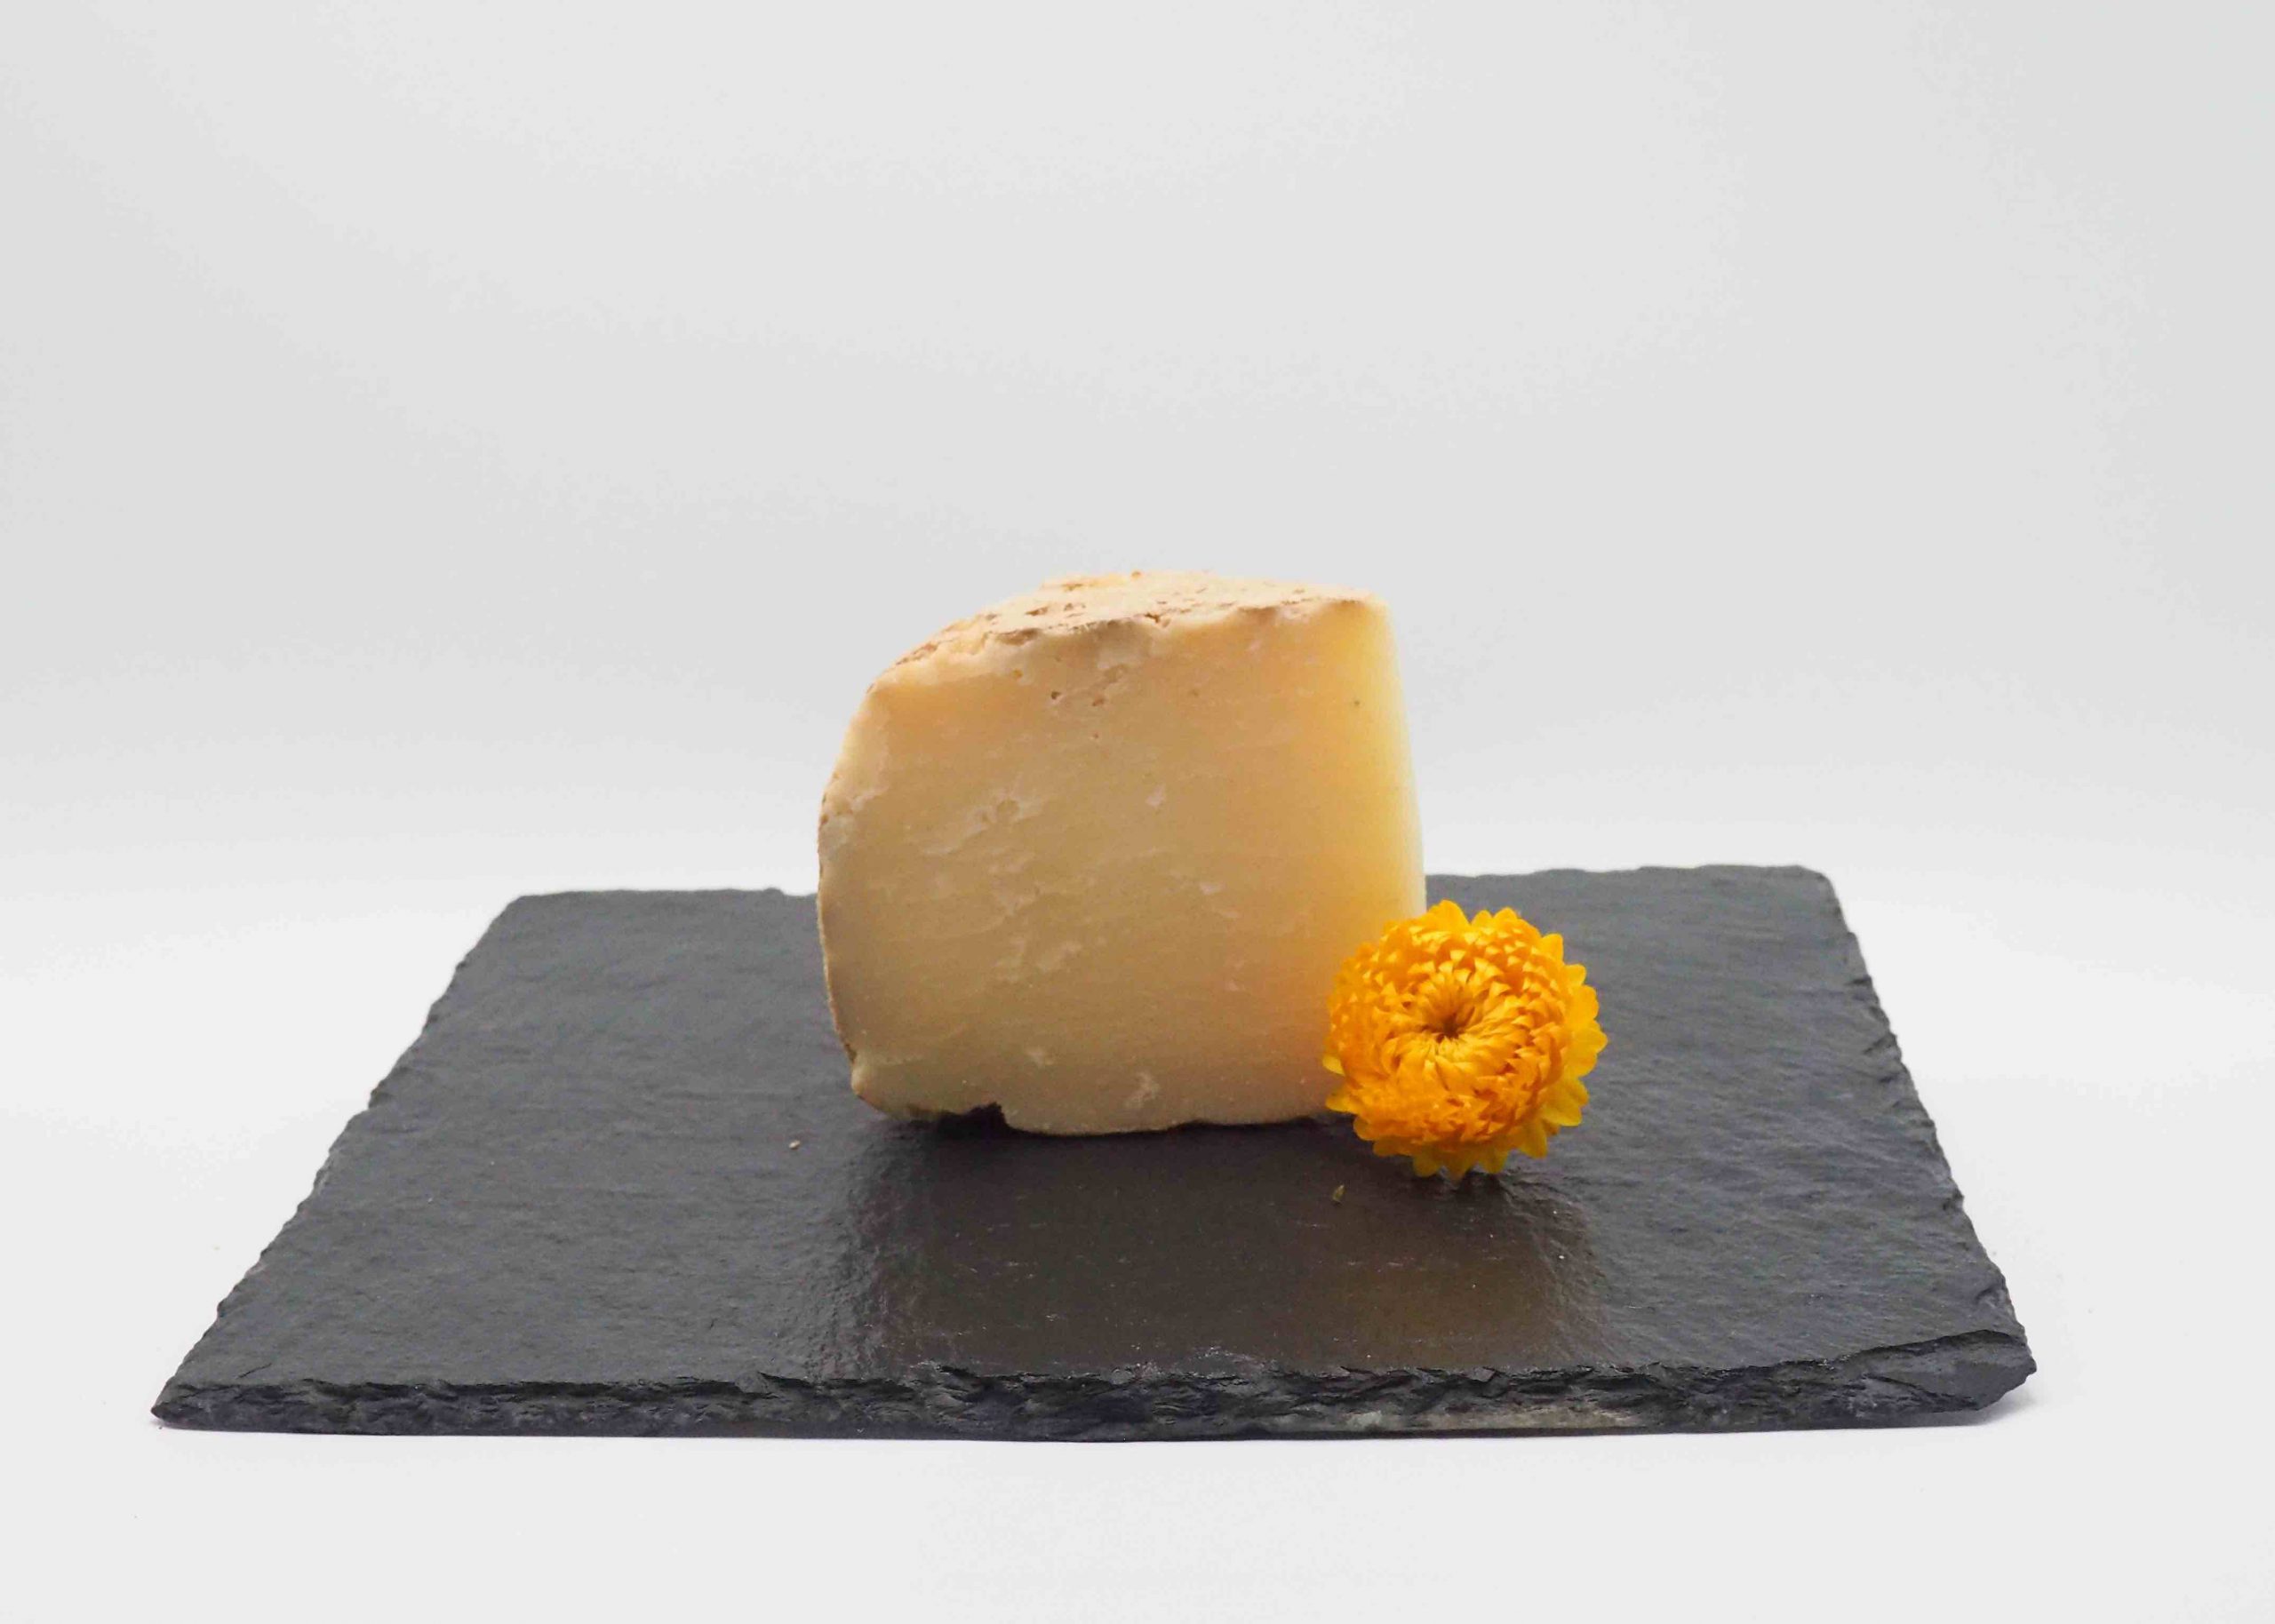 le vieux Napoléon est un fromage typique des Pyrénées alliant finesse et richesse au palais. Livraison à domicile